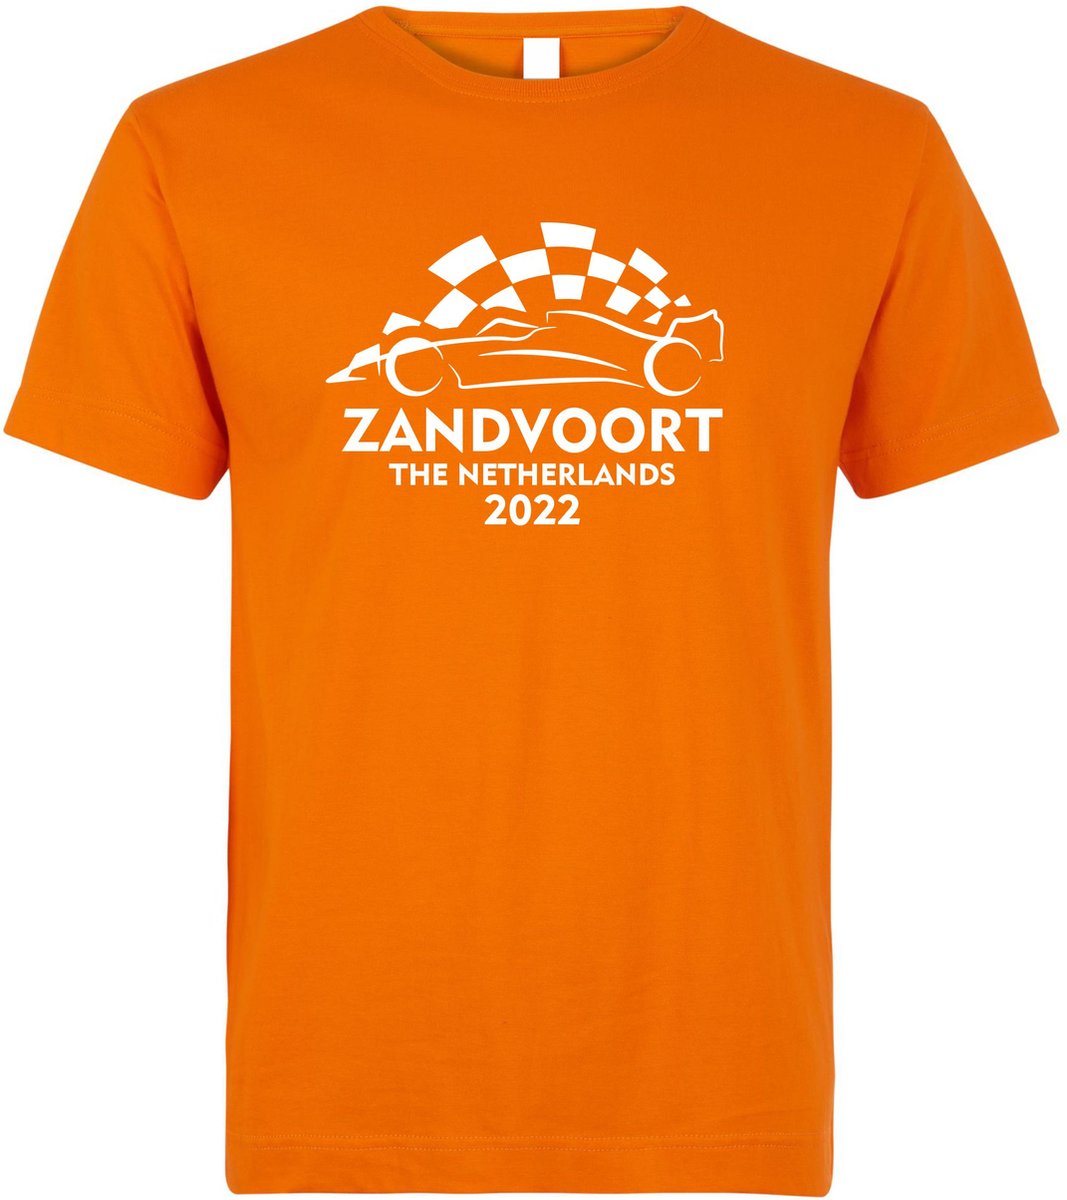 T-shirt kinderen Zandvoort 2022 met raceauto | Max Verstappen / Red Bull Racing / Formule 1 fan | Grand Prix Circuit Zandvoort | kleding shirt | Oranje | maat 68